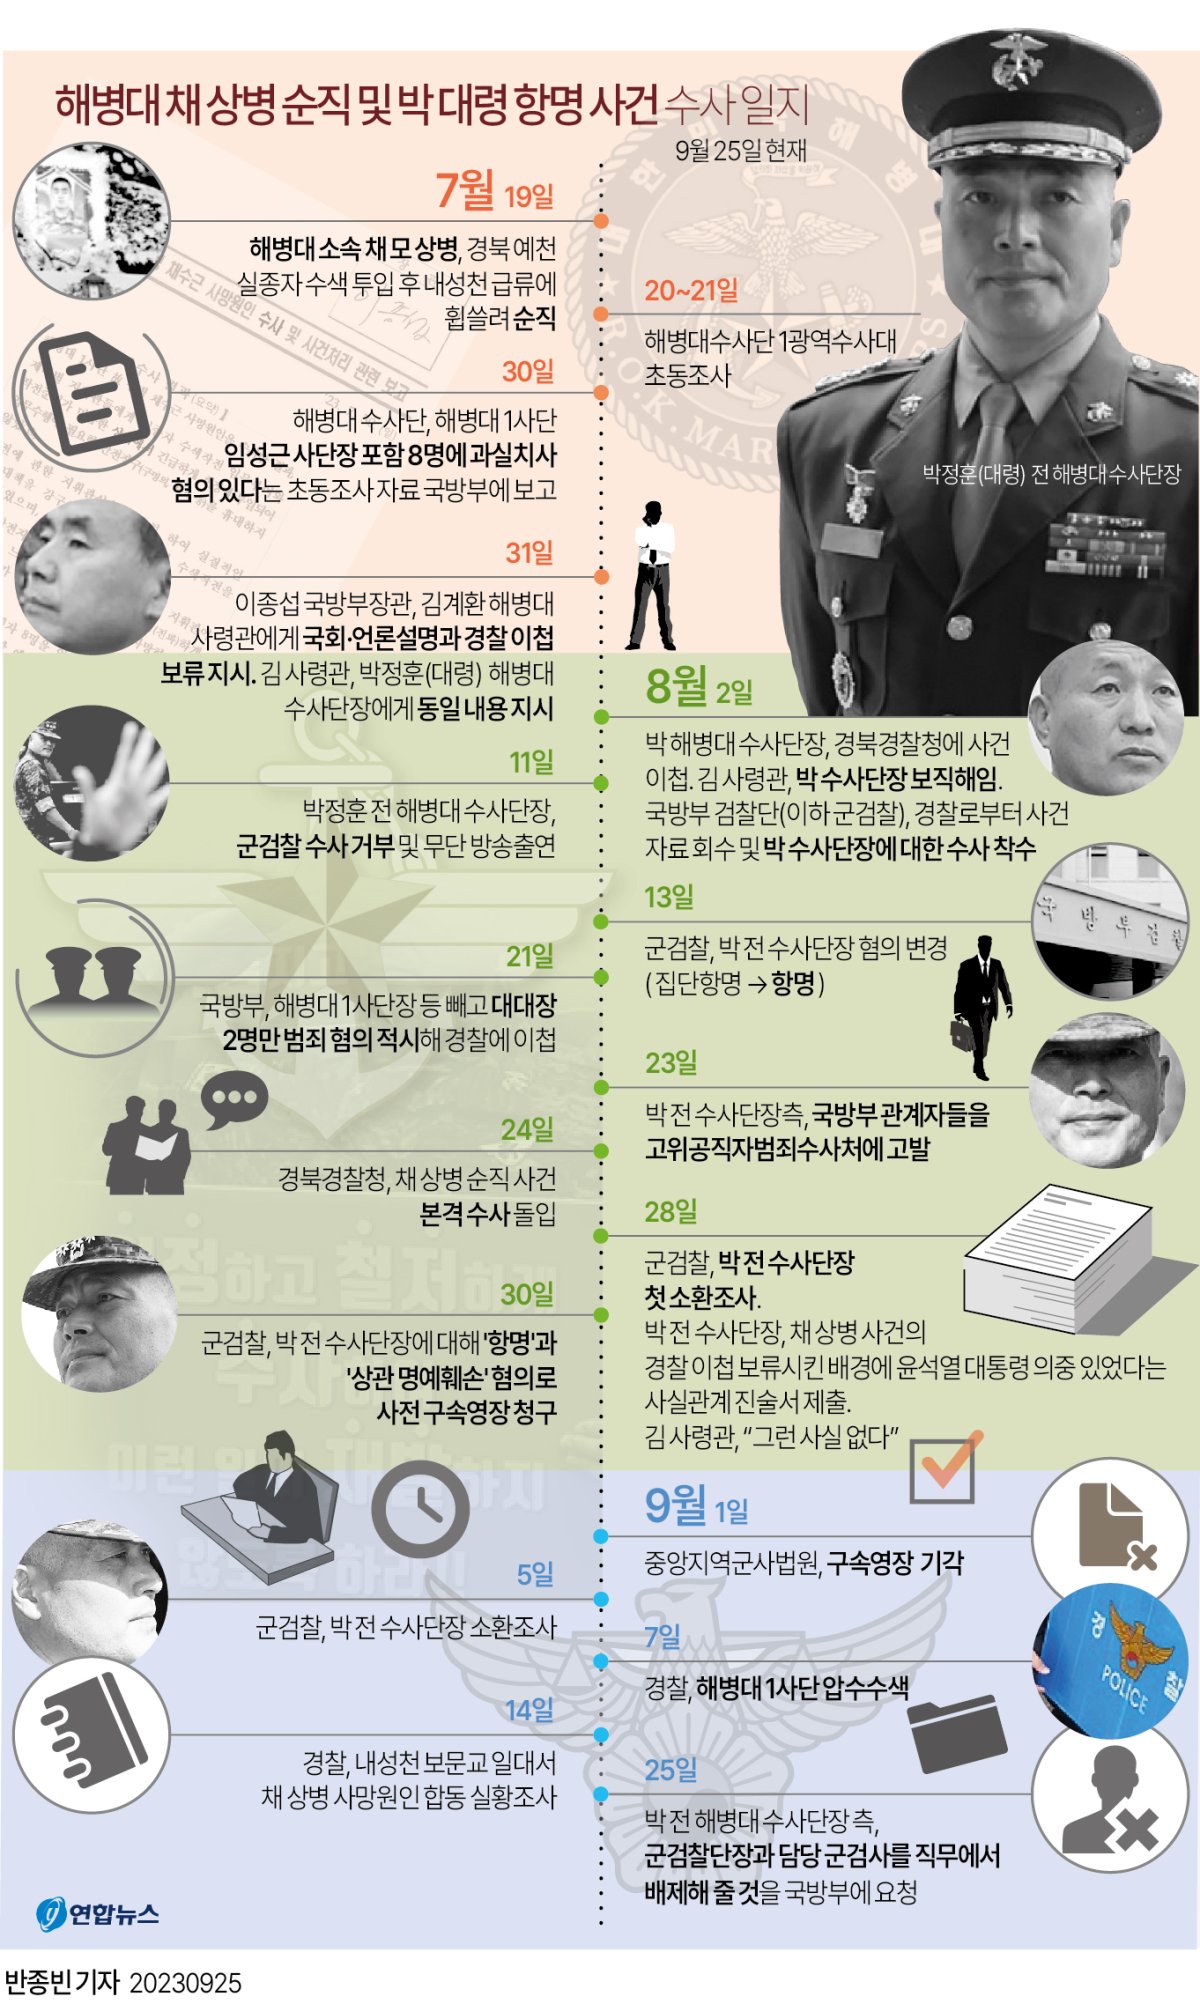 [그래픽] 해병대 채 상병 순직 및 박정훈 대령 항명 사건 수사 일지